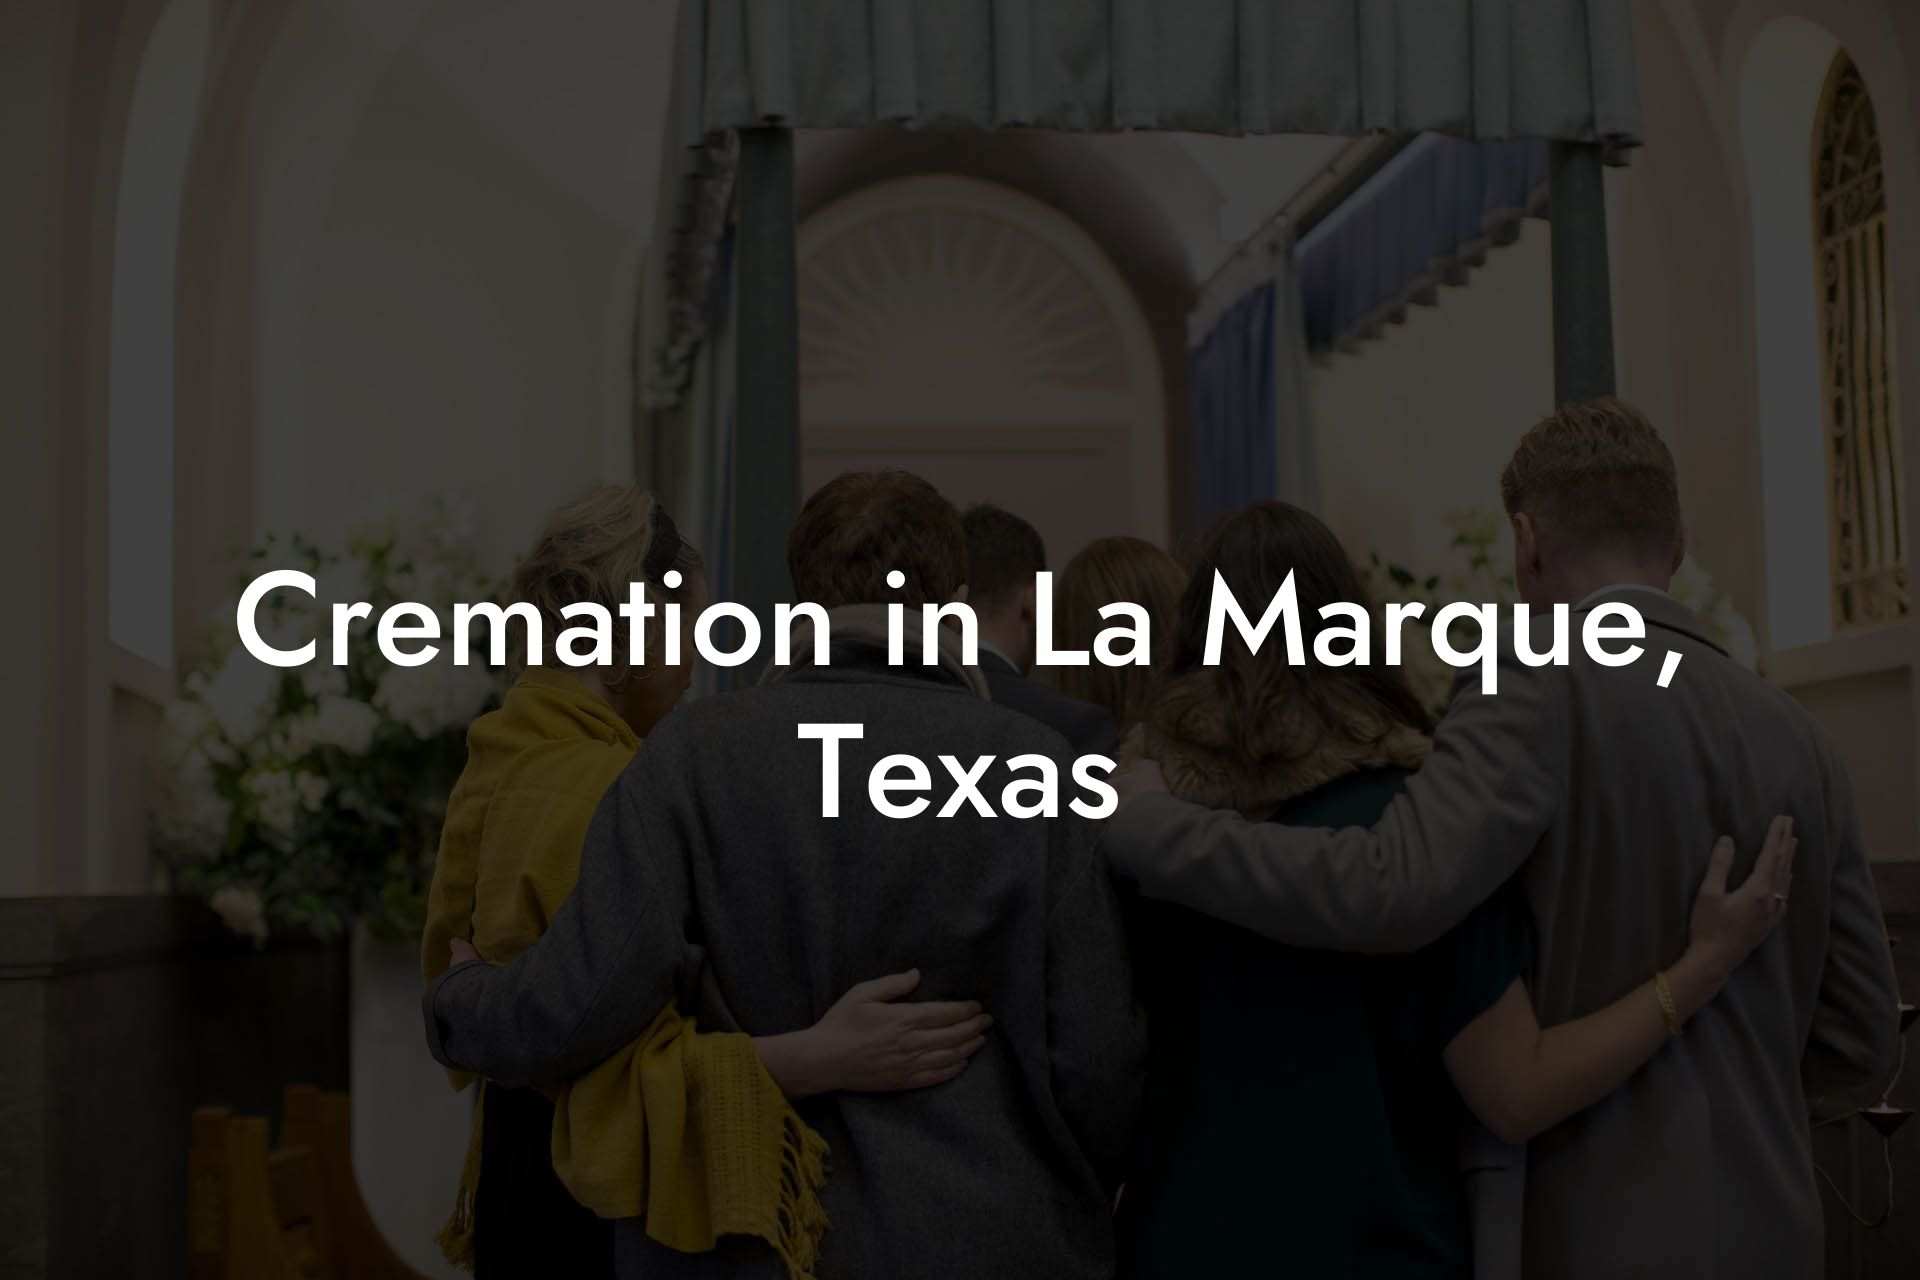 Cremation in La Marque, Texas